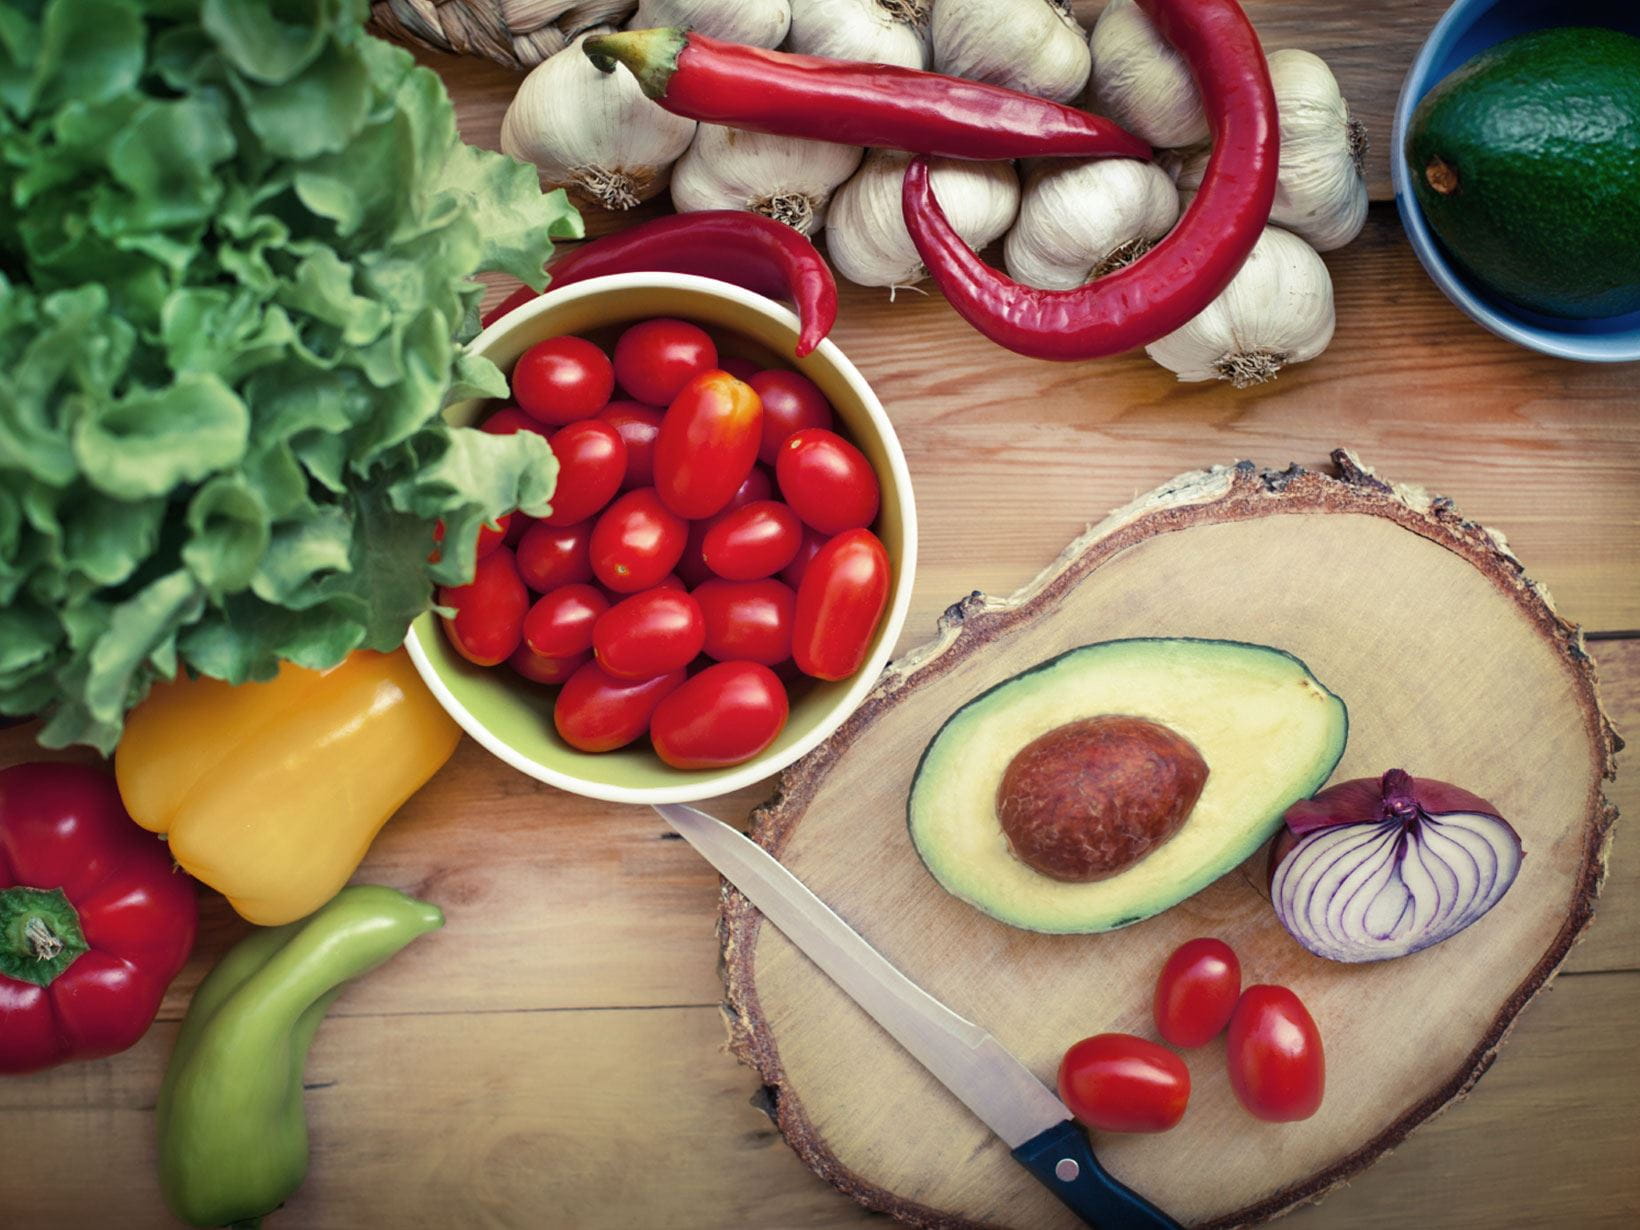 Gesunde Ernährung: Gemüse gegen Frühjahrsmüdigkeit